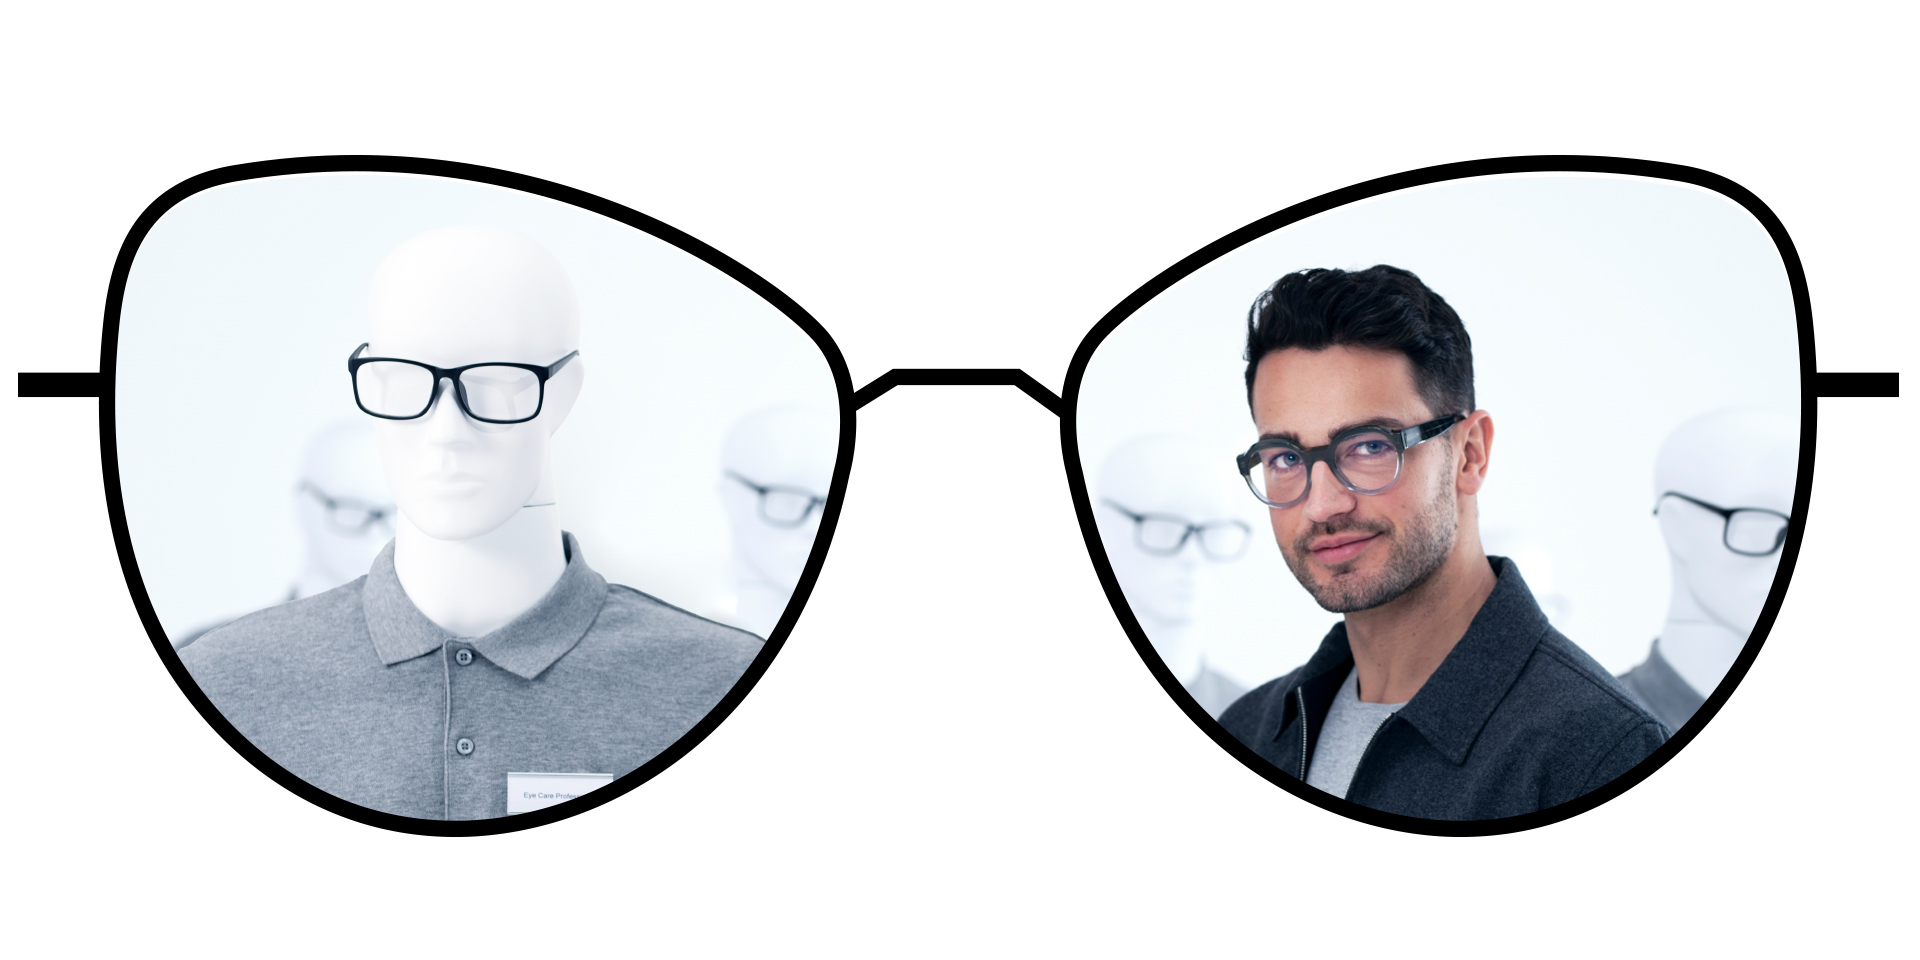 此眼镜插图展现了蔡司普通单光镜片的模糊区域，并 蔡司泽锐单光镜片的大范围清晰视野区域进行了比较。